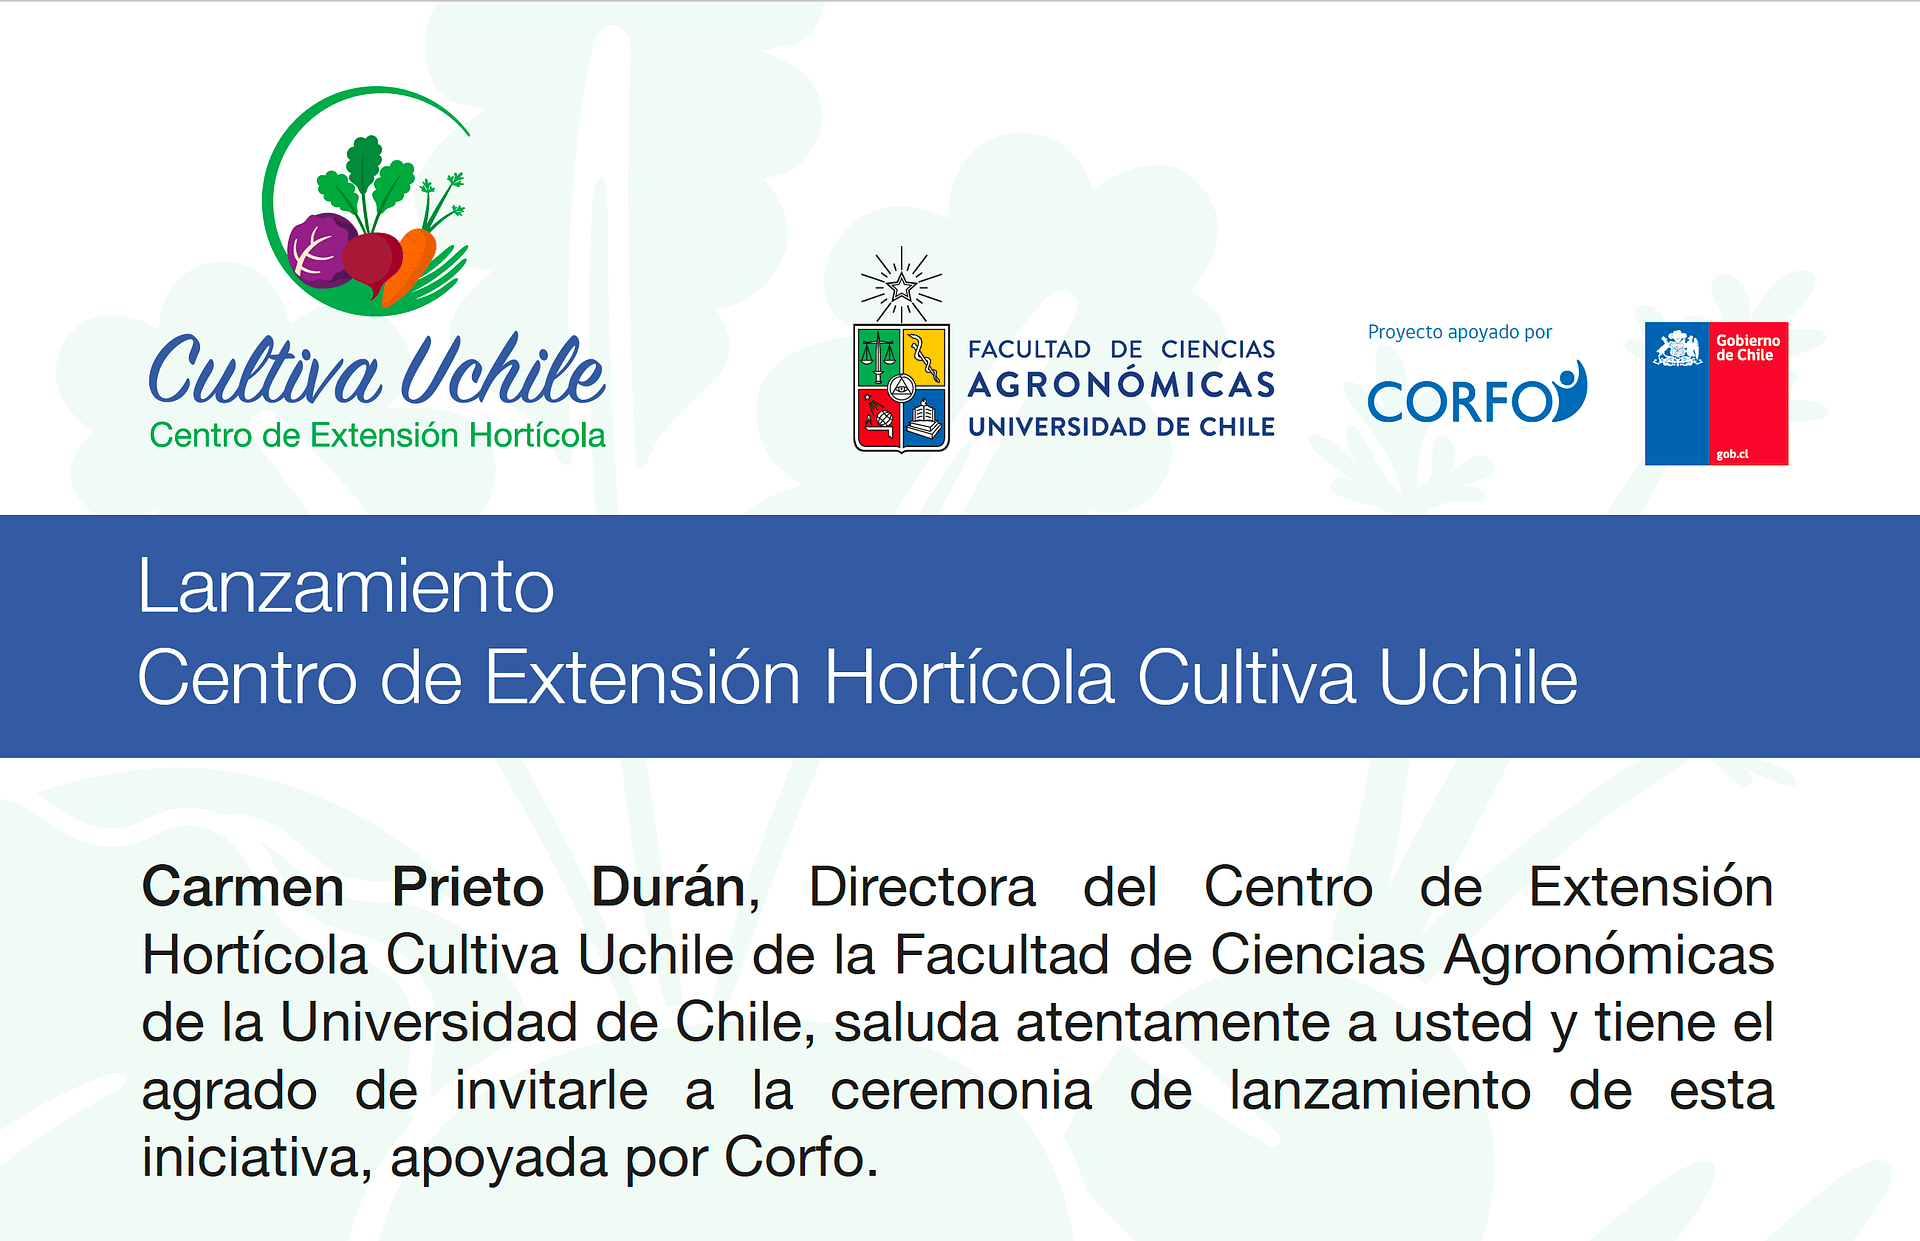 Lanzamiento Centro de Extensión Hortícola Cultiva Uchile